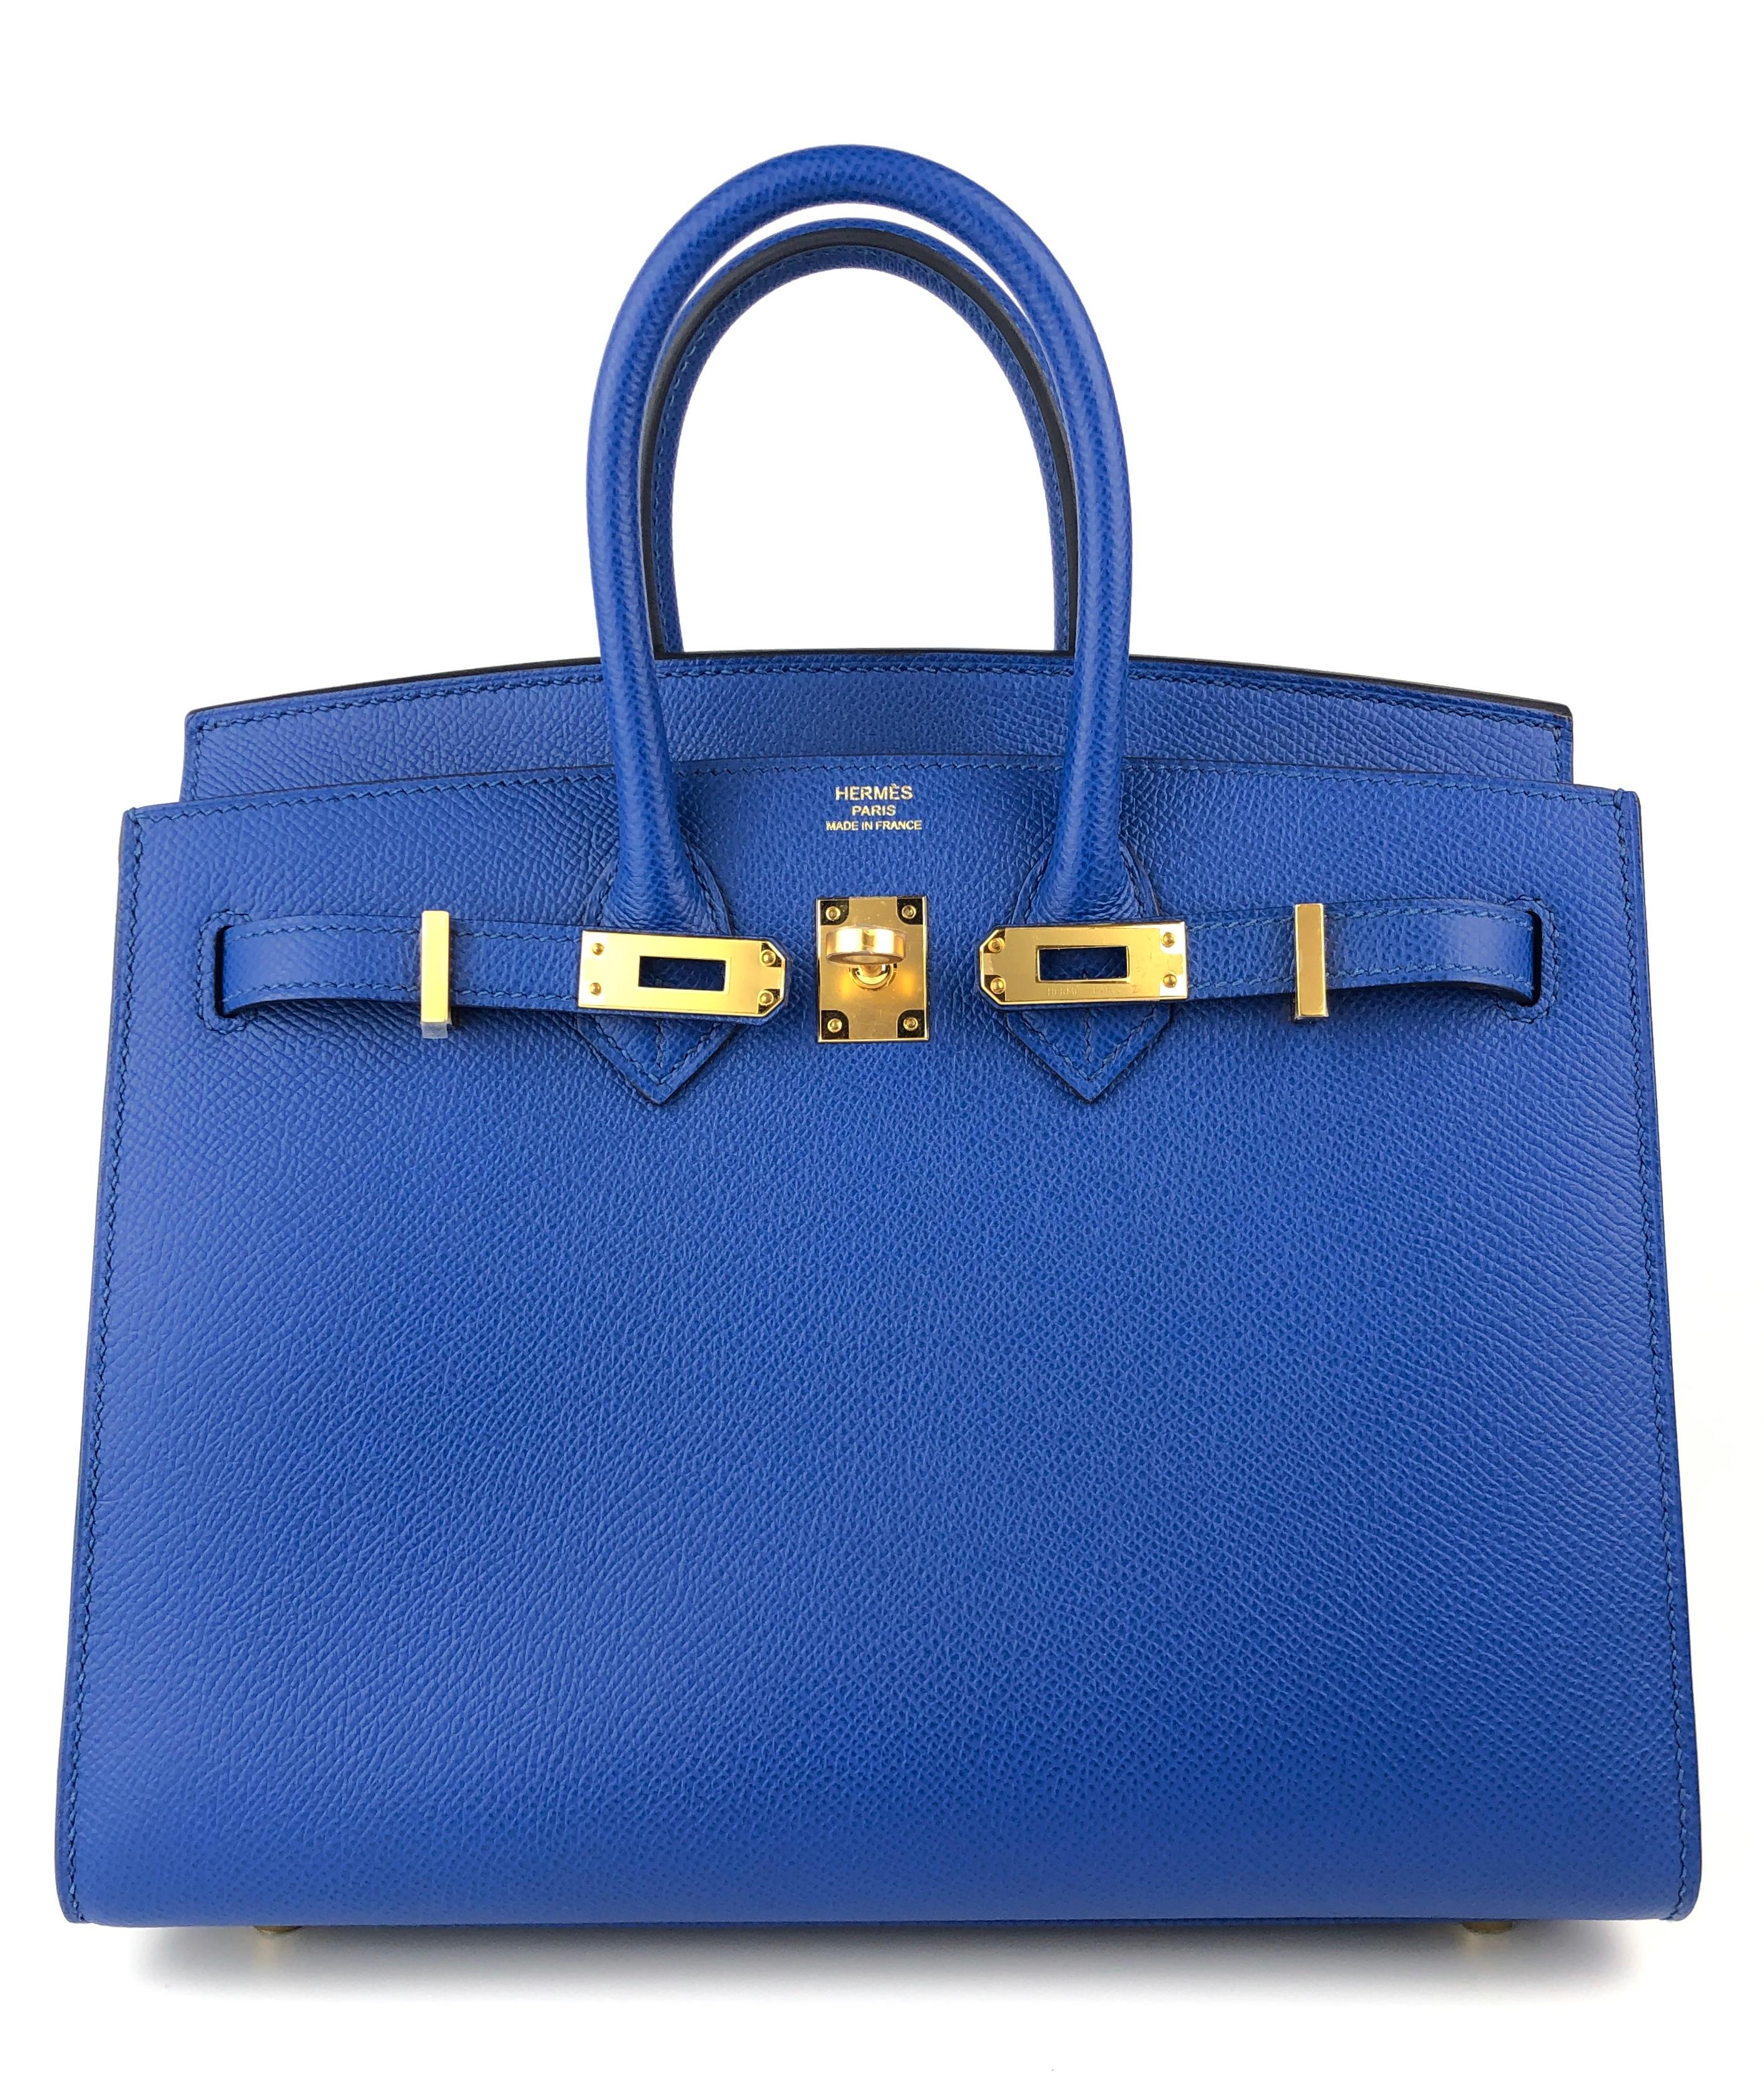 Absolut atemberaubend wie neu Hermes Birkin 25 Sellier Blau Frankreich Epsom Leder ergänzt durch Gold Hardware. Neuwertiger Kunststoff an allen Geräten. Z Stempel 2021. 

Bitte beachten Sie, dass die Clochette, das Schloss und die Schlüssel nicht